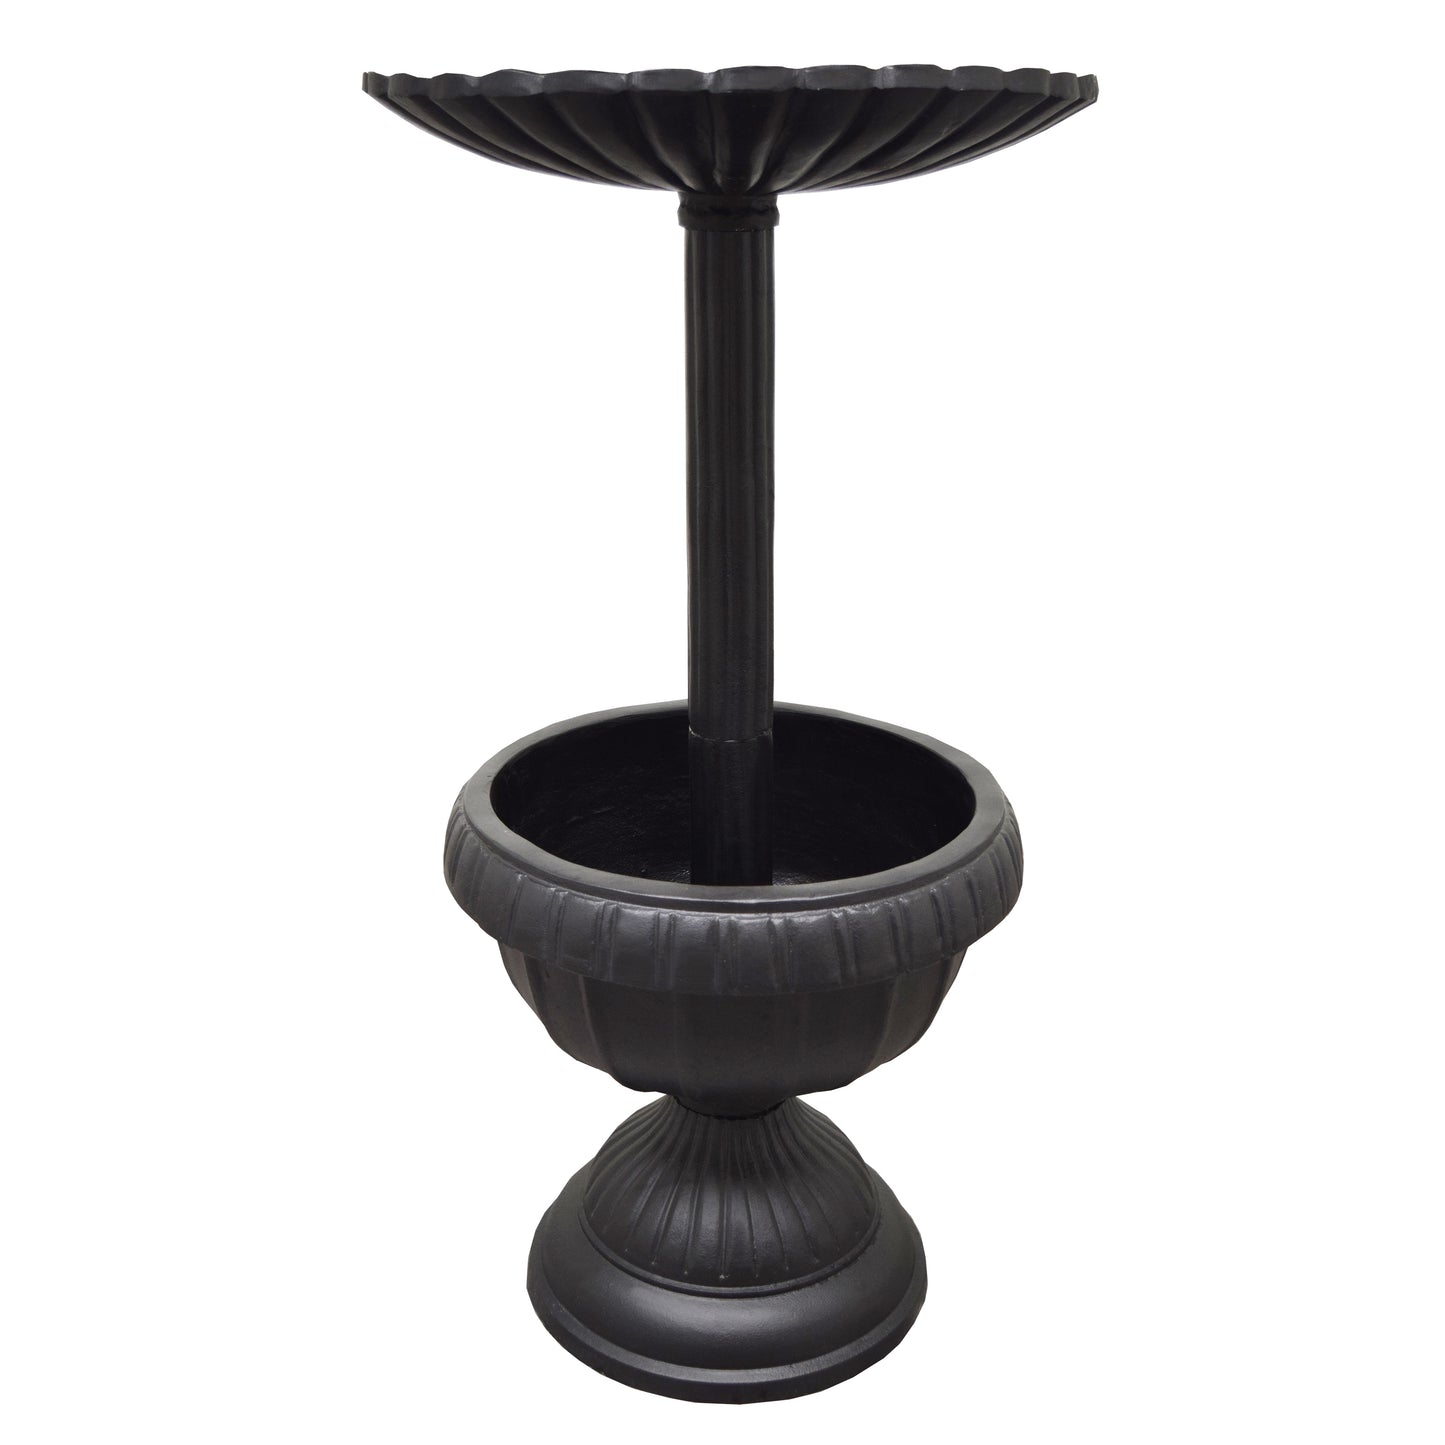 Ornate Round Cast Aluminum Metal 35-in Bird Bath Planter Vase Combo